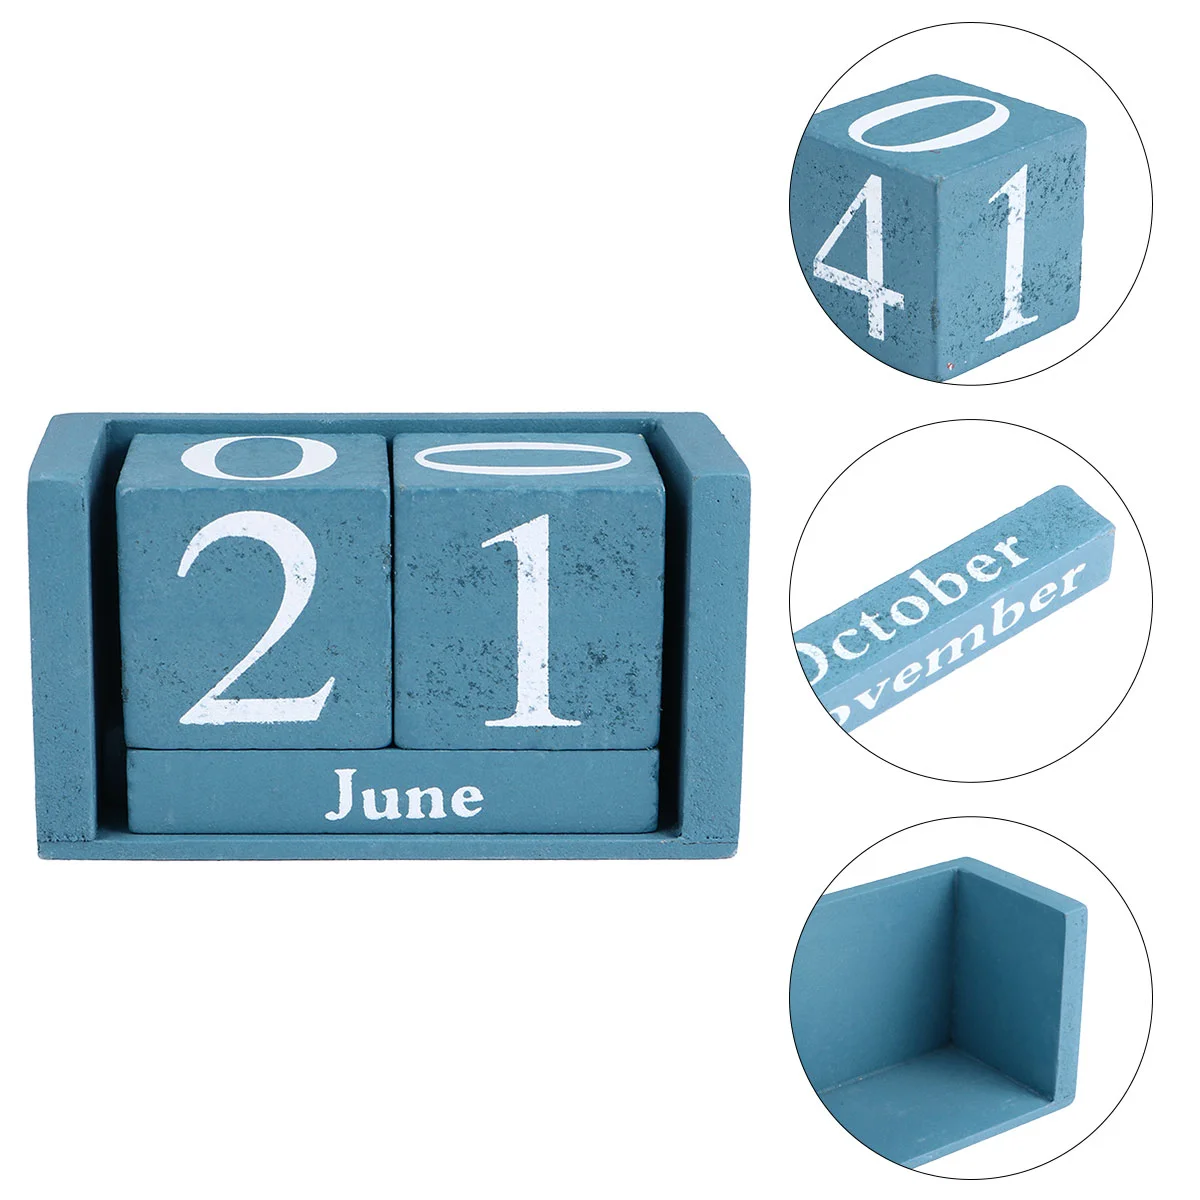 

Настольный деревянный календарь, винтажный календарь, настольный деревянный блок, отображение даты месяца